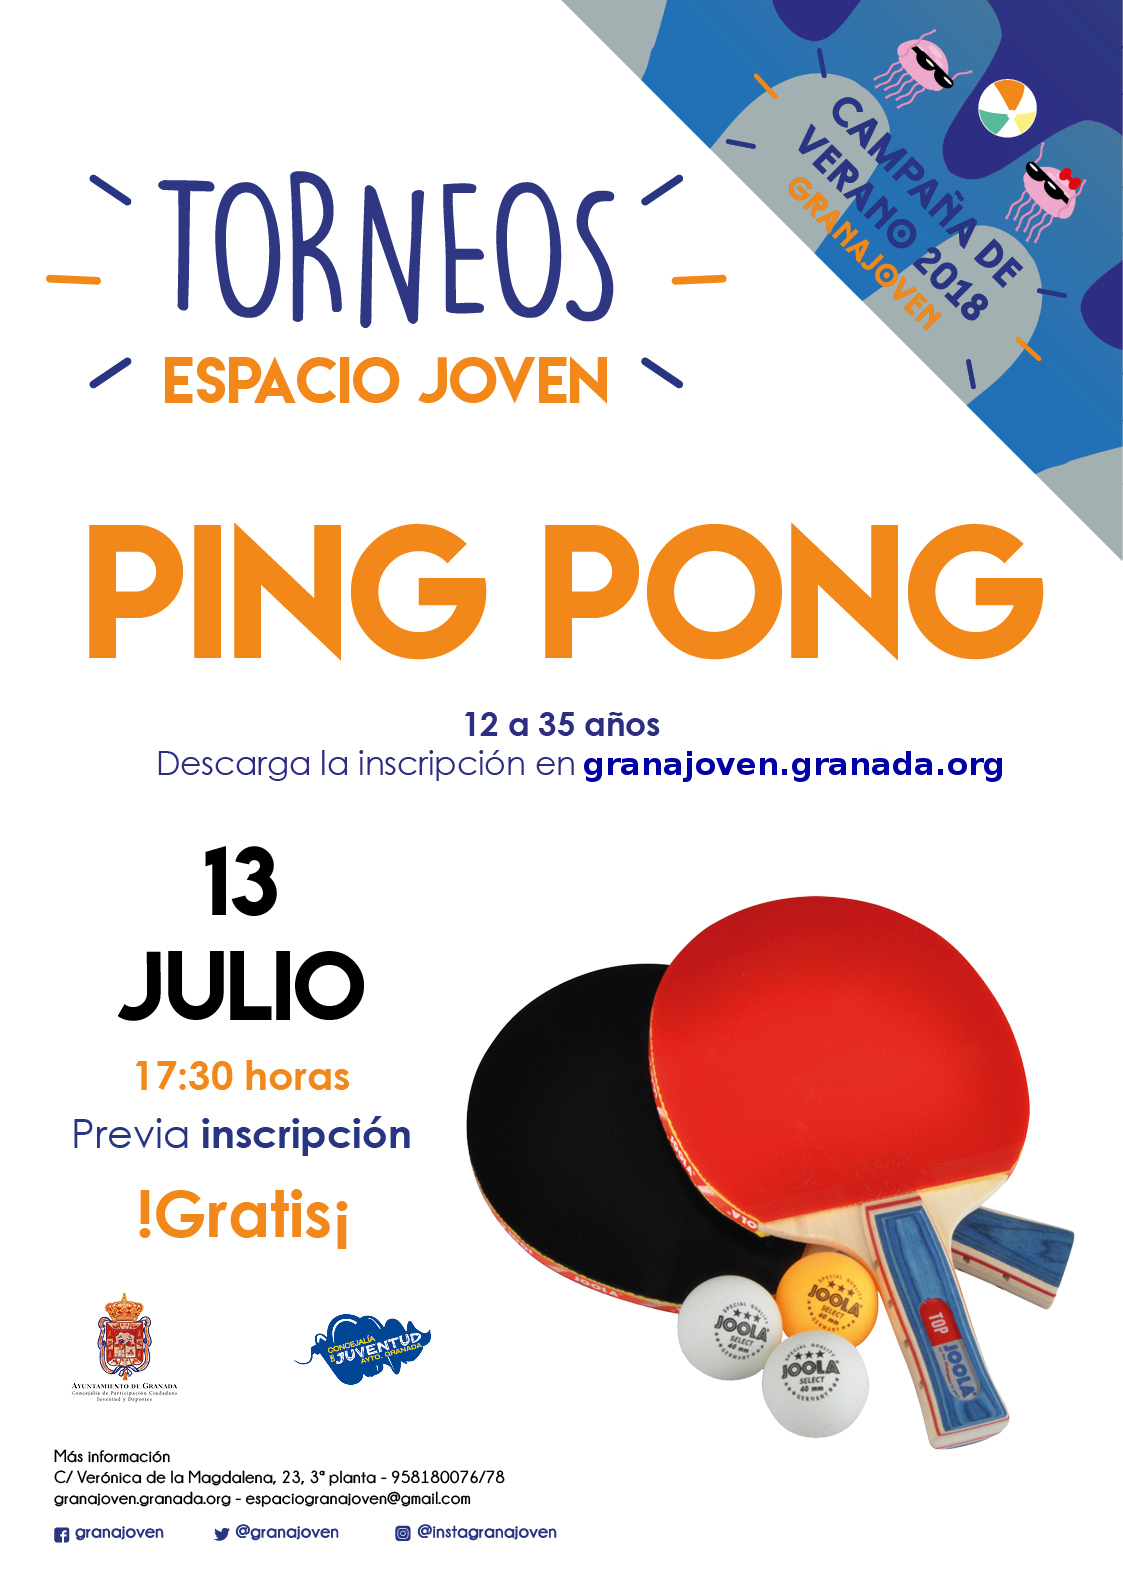 Torneos ESPACIO JOVEN: PING PONG